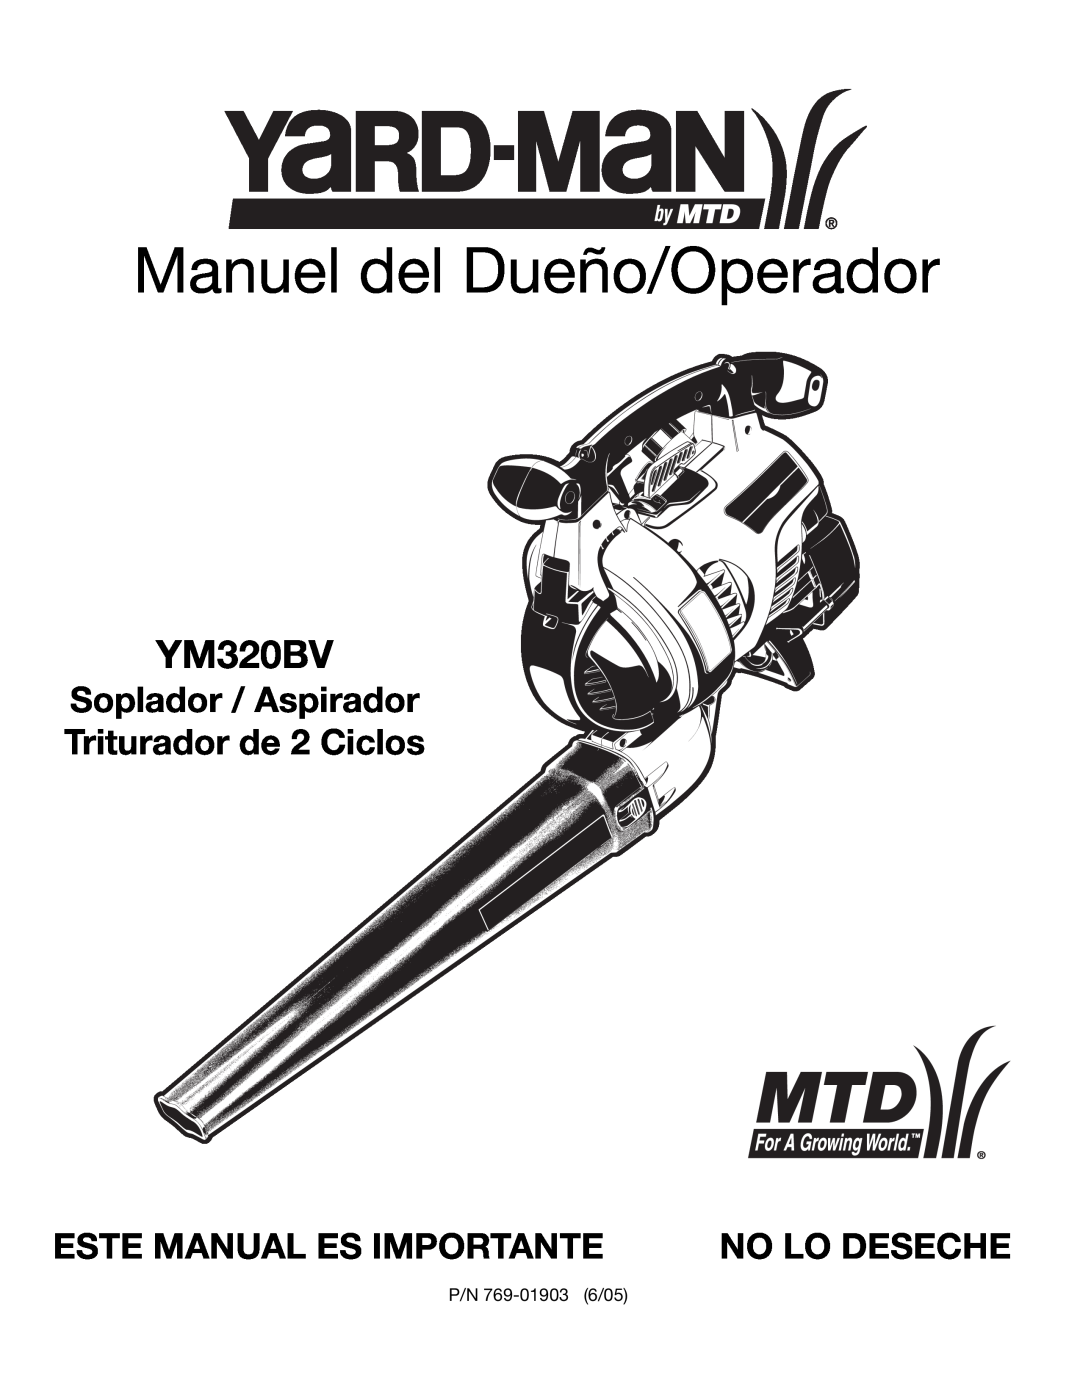 Bolens YM320BV manual Manuel del Dueño/Operador, Soplador / Aspirador Triturador de 2 Ciclos, Este Manual Es Importante 